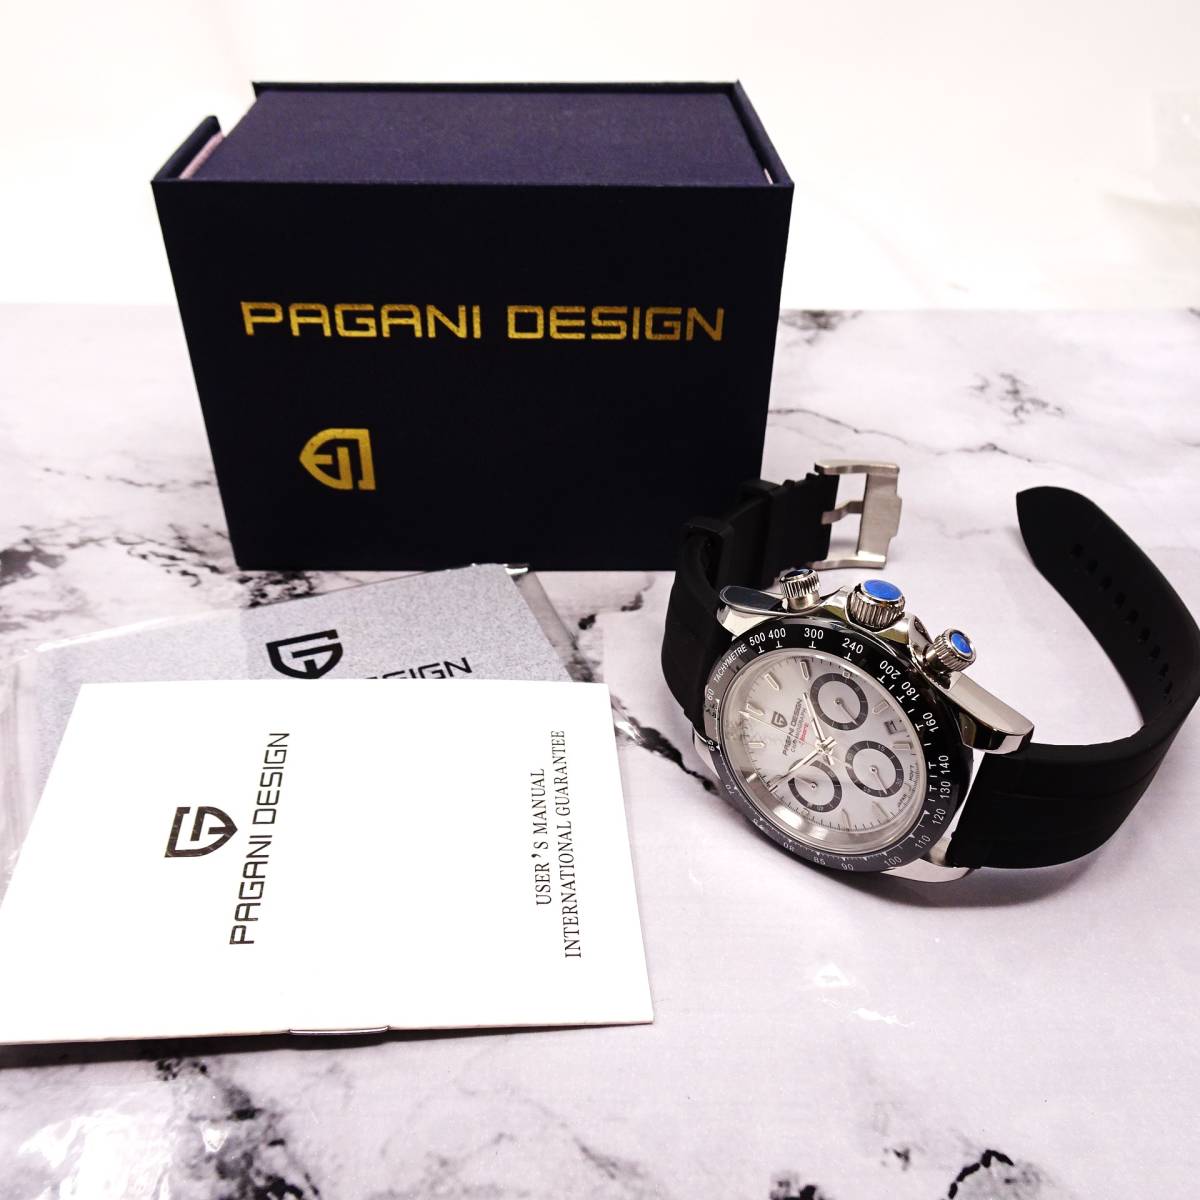 送料無料・新品・パガーニデザイン・メンズ・セイコー製VK63クロノグラフクオーツ式腕時計 ・ラバーストラップ・ホワイト文字盤モデル_画像10